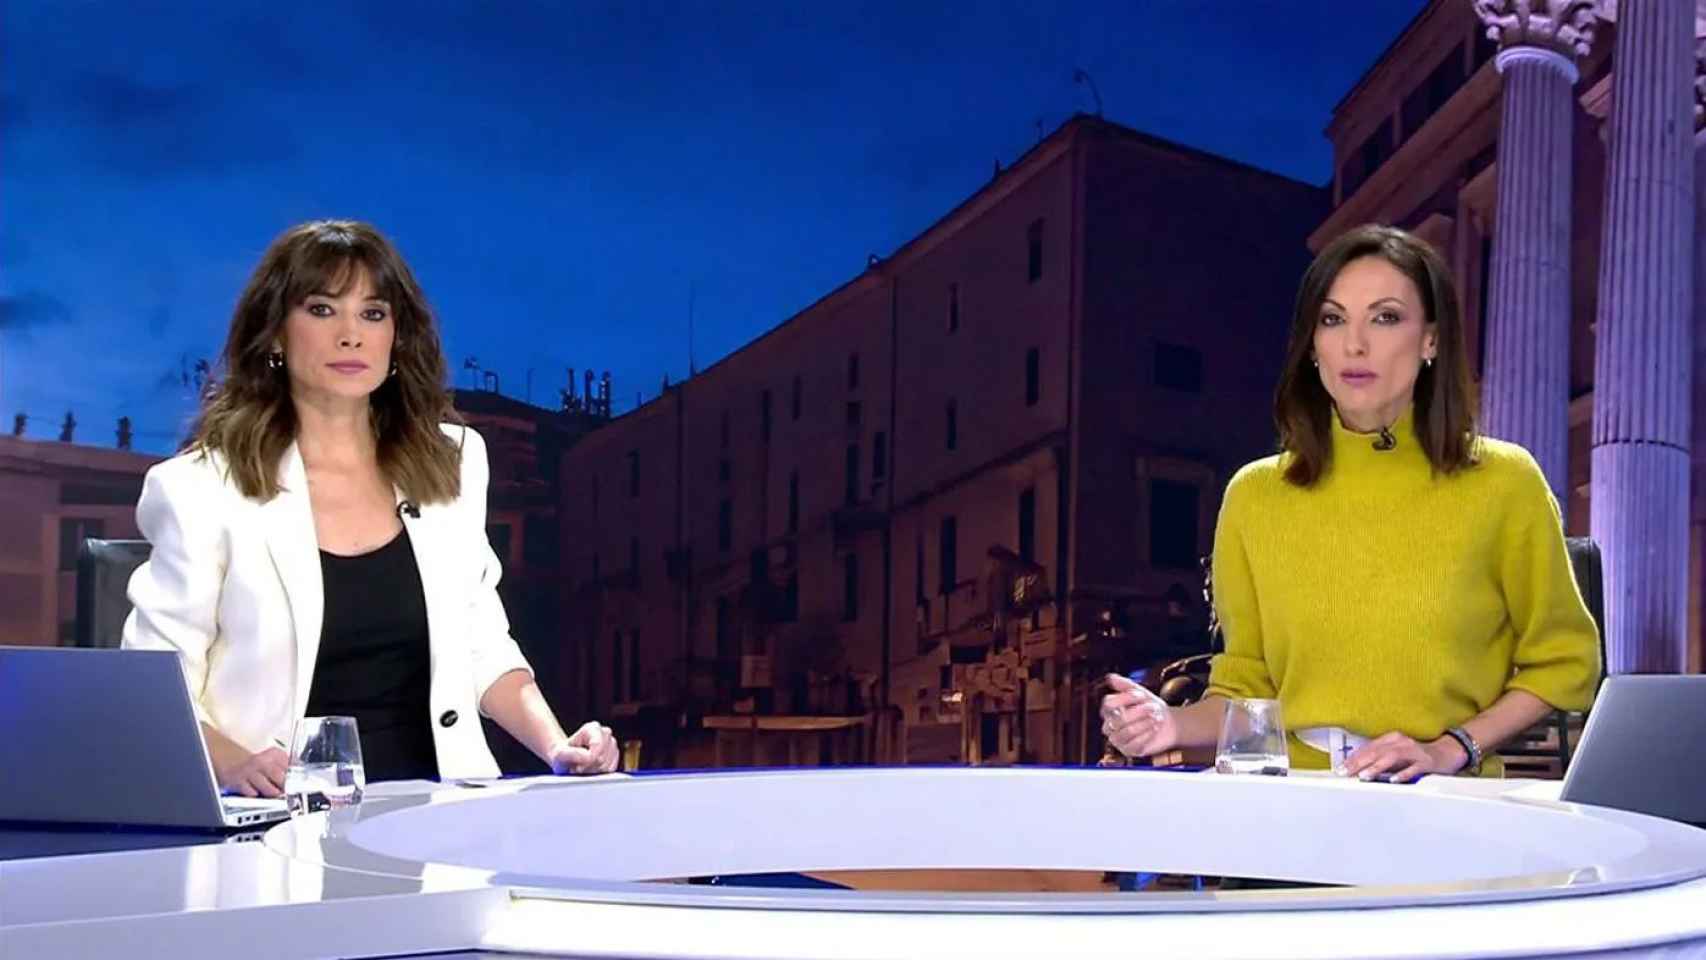 Arancha Morales y Laila Jiménez, presentadoras de la edición matinal de 'Informativos Telecinco'.